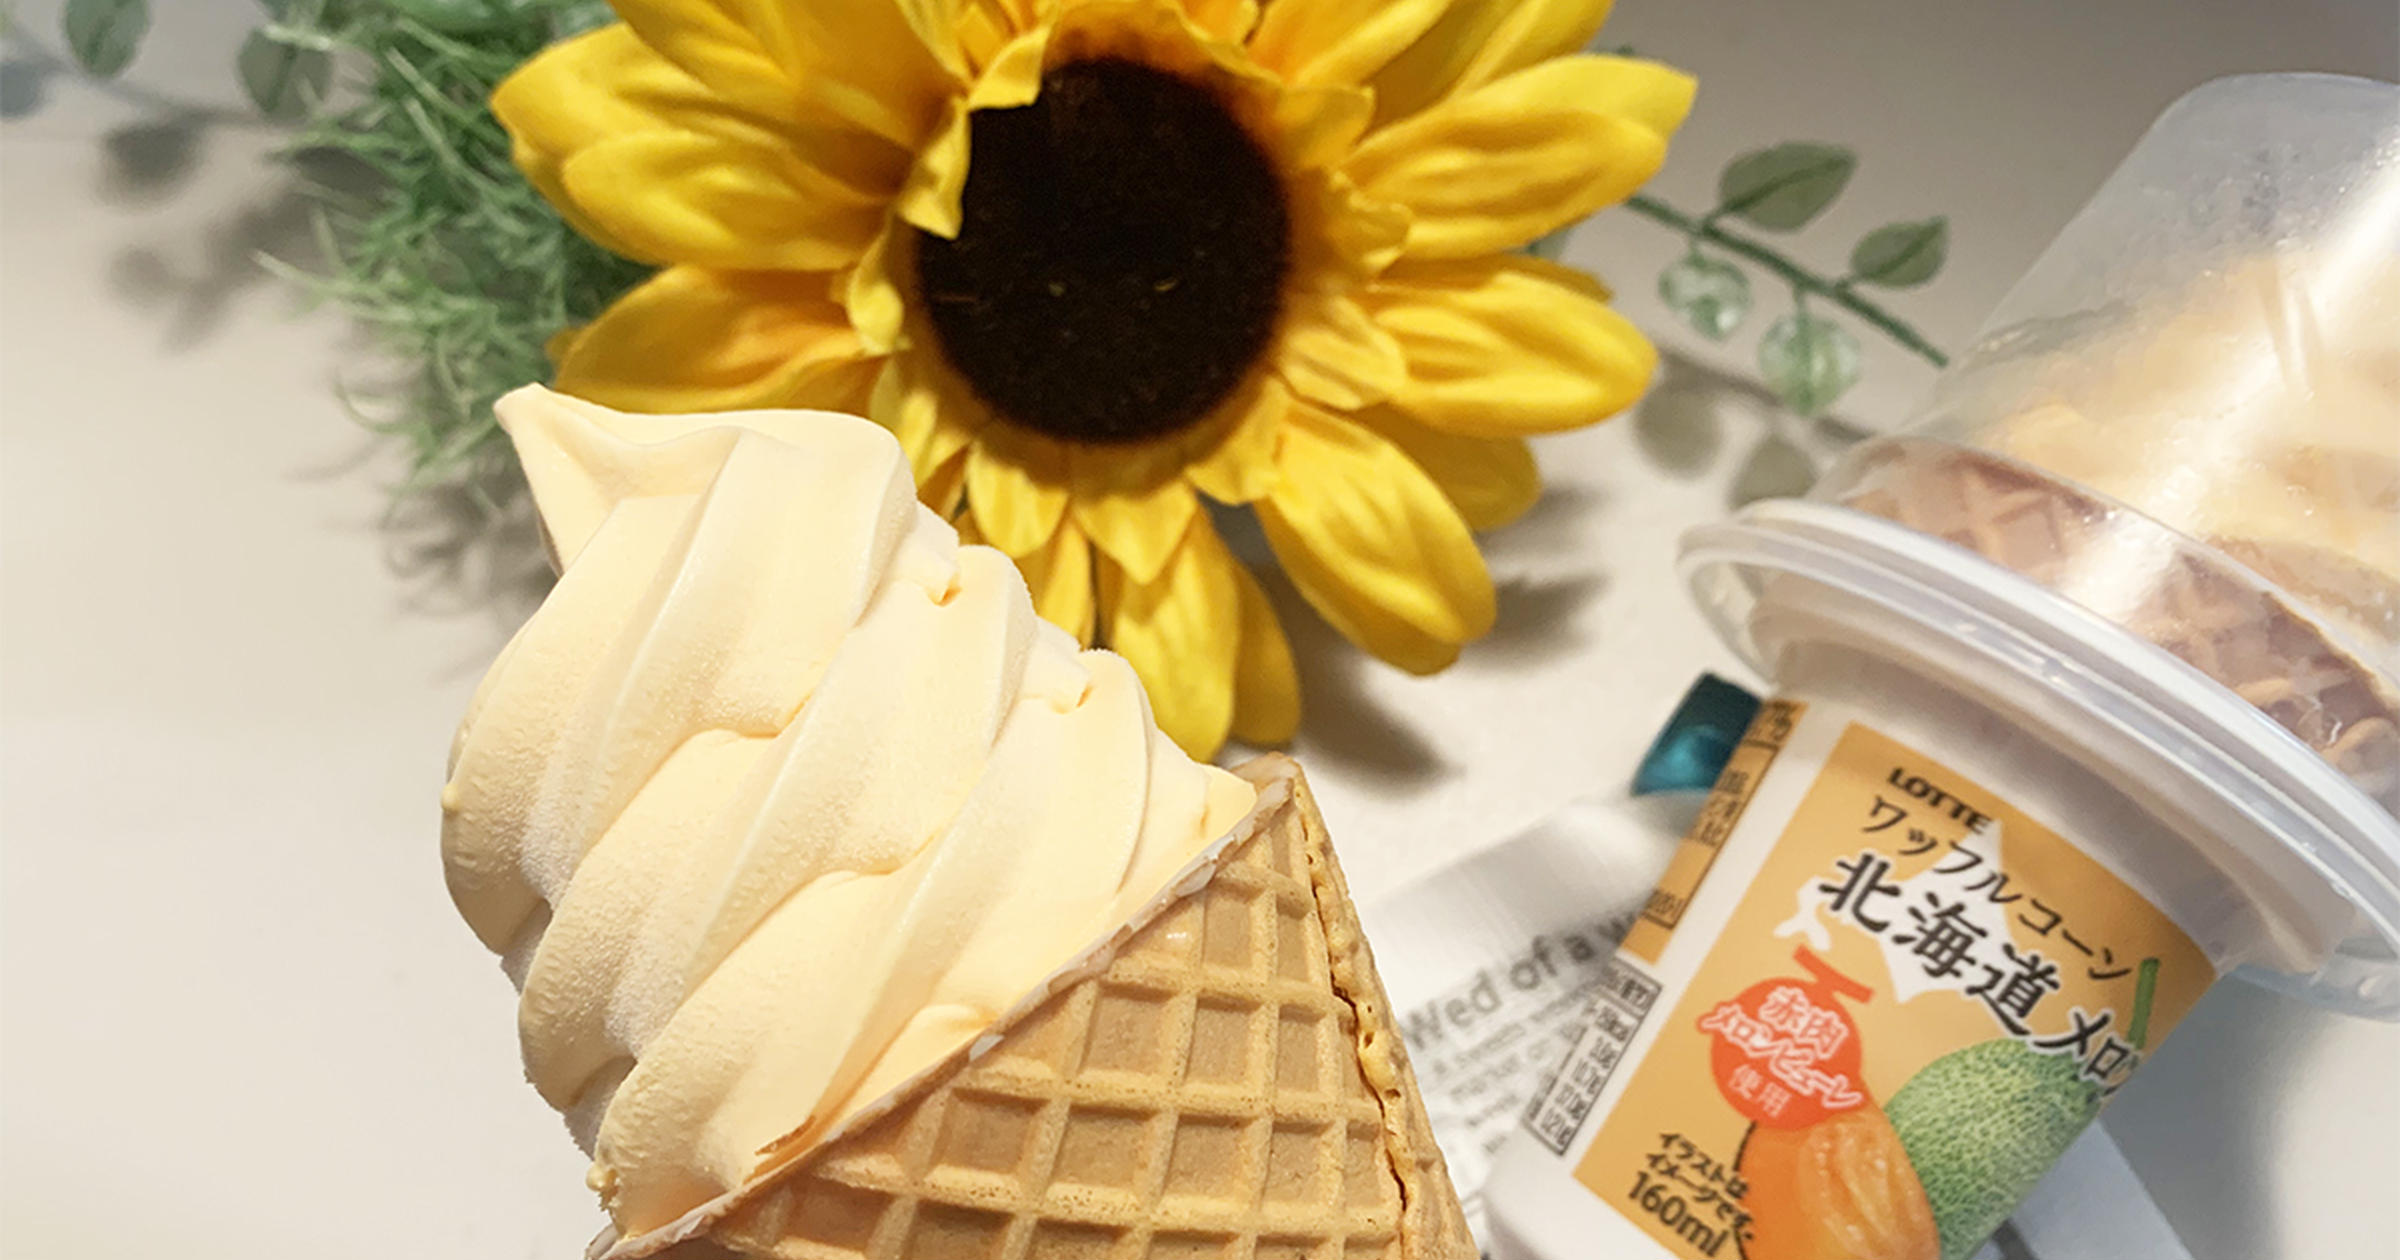 果汁 果肉7 ファミマ新発売のソフトクリームは濃厚 ジューシーな北海道メロン味 トクバイニュース